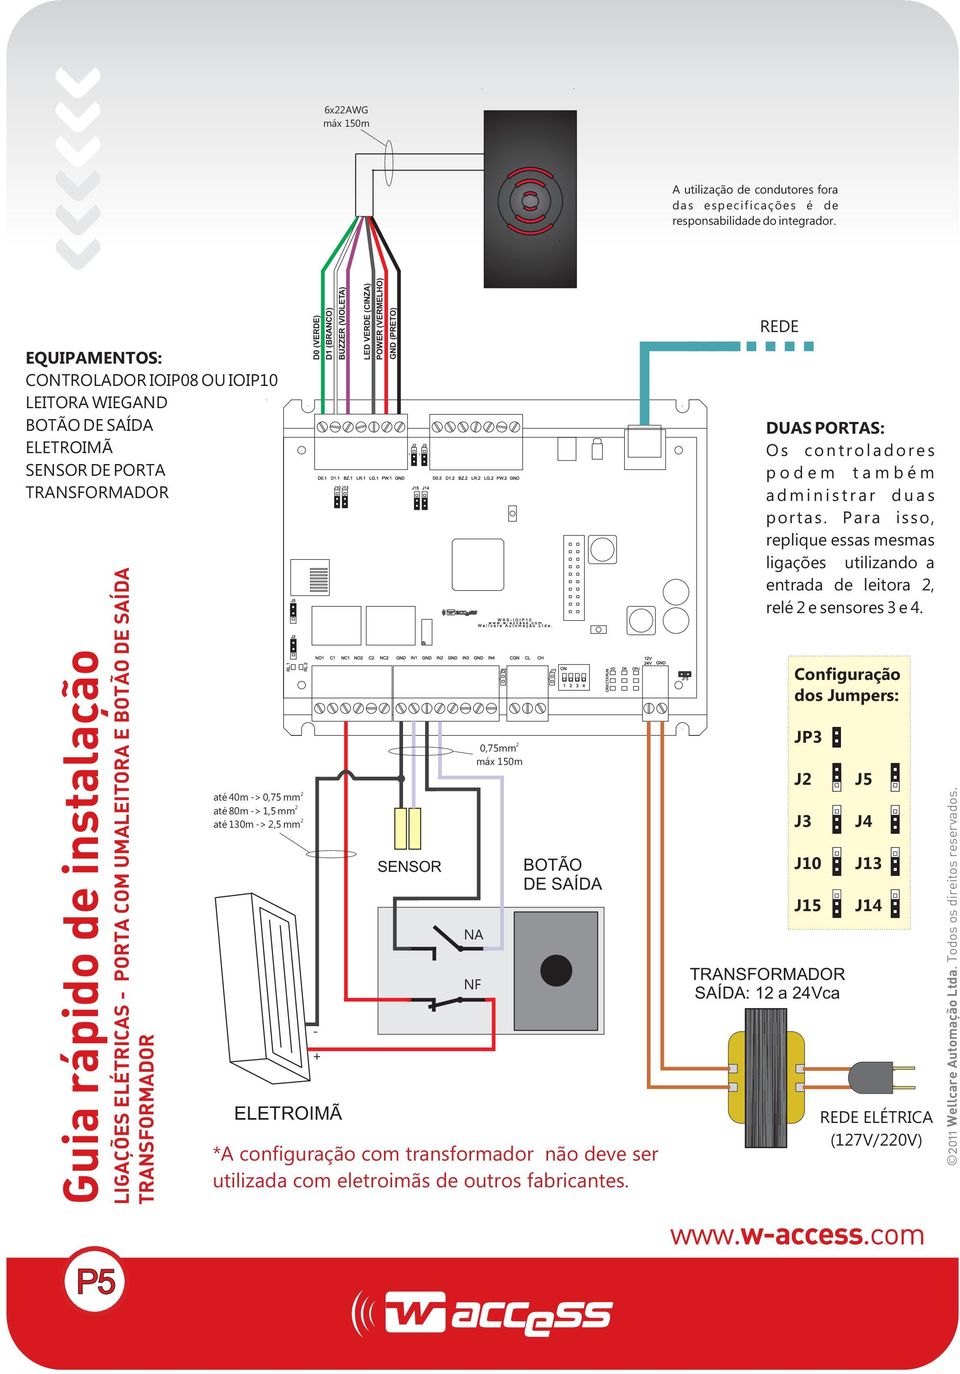 TRANSFORMADOR P5 até 40m -> 0,75 mm até 80m -> 1,5 mm até 130m ->,5 mm D0 (VERDE) D1 (BRANCO) BUZZER (VIOLETA) ELETROIMÃ - + LED VERDE (CINZA) POWER (VERMELHO) GND (PRETO) SENSOR NA NF 0,75mm máx